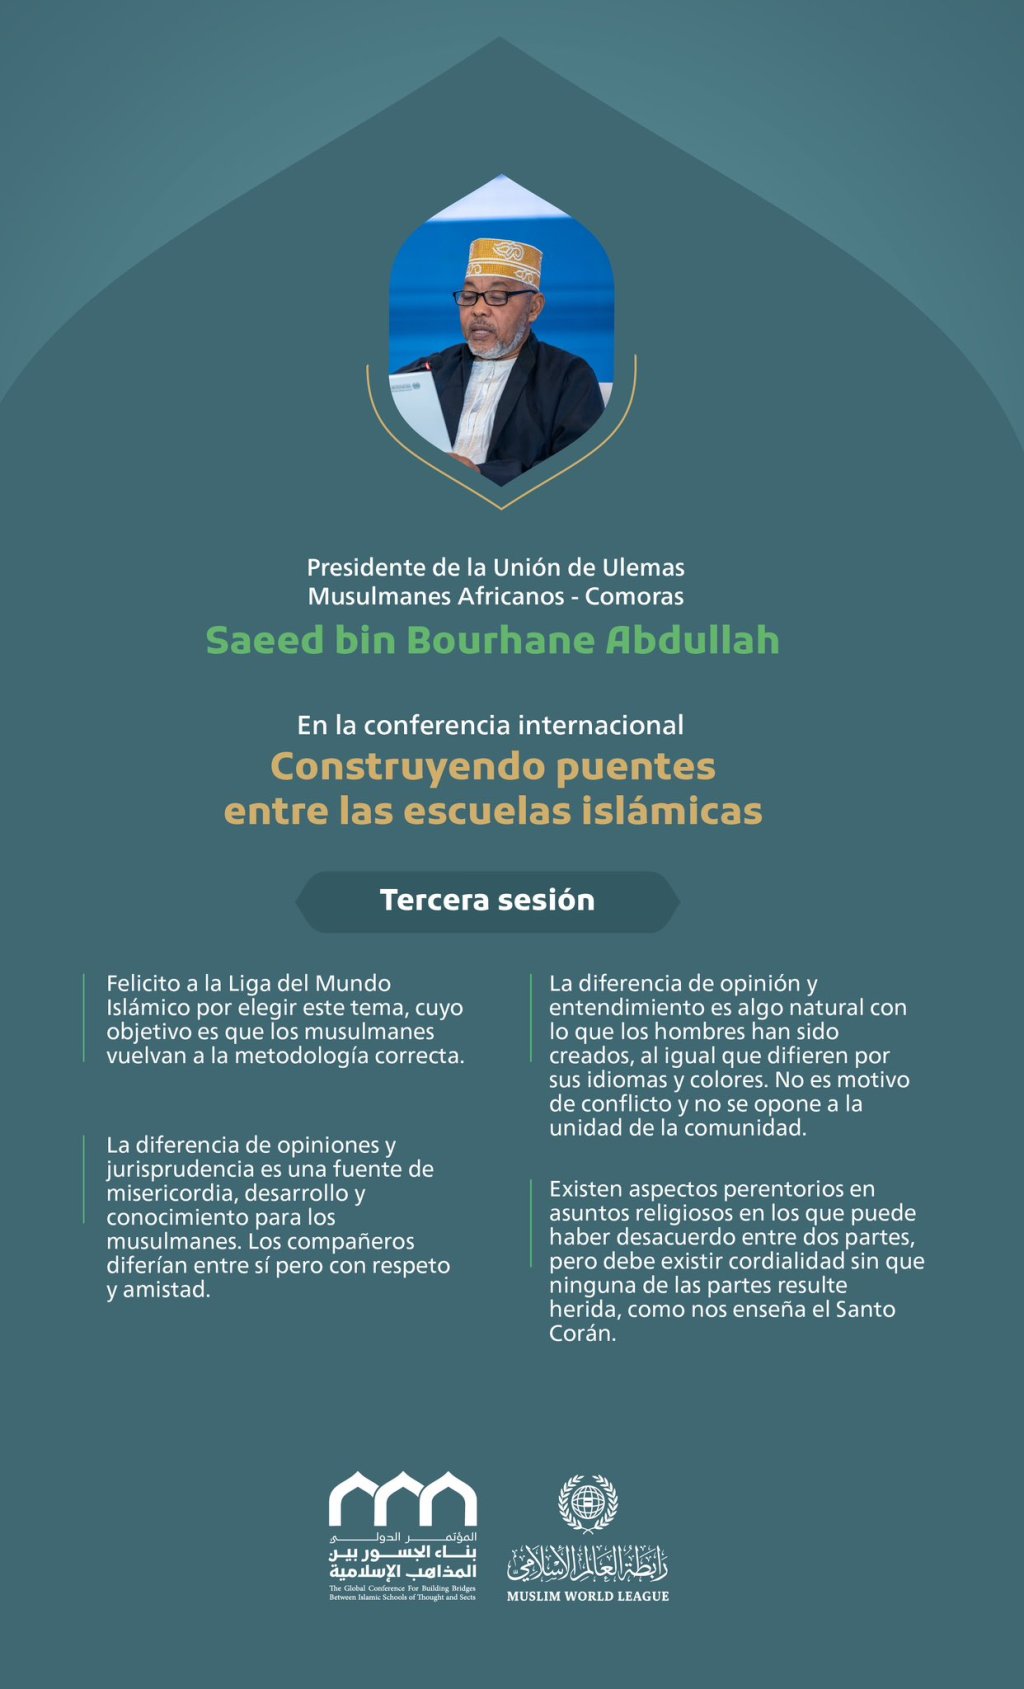 Extractos del discurso del Presidente de la Unión de Eruditos Musulmanes Africanos (Comoras), Sheij Saeed bin Bourhane Abdullah, en la conferencia internacional "Construyendo puentes entre las escuelas islámicas":